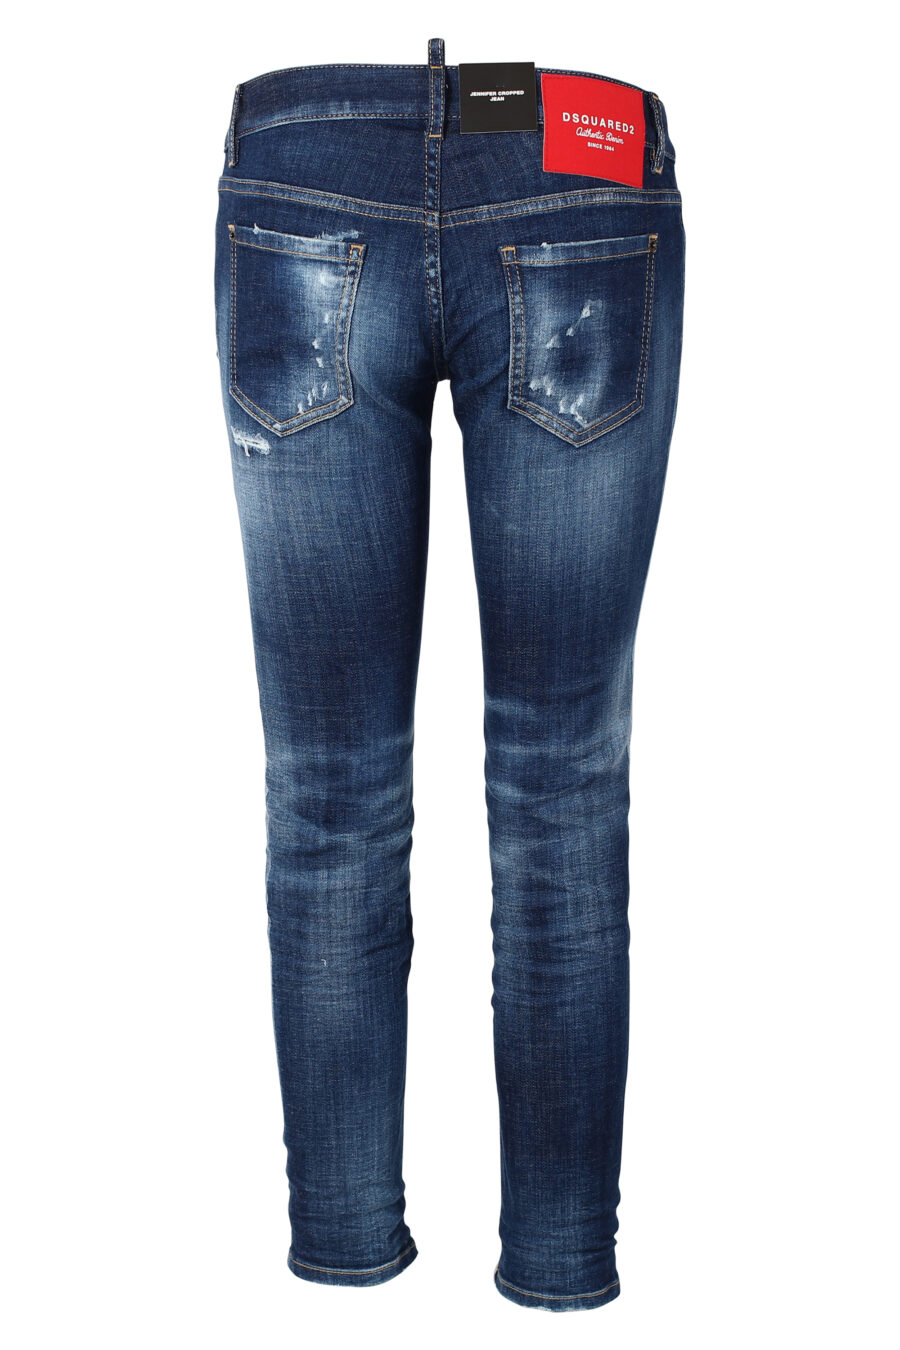 Calças "jennifer cropped jean" azuis com meio rasgão - IMG 9862